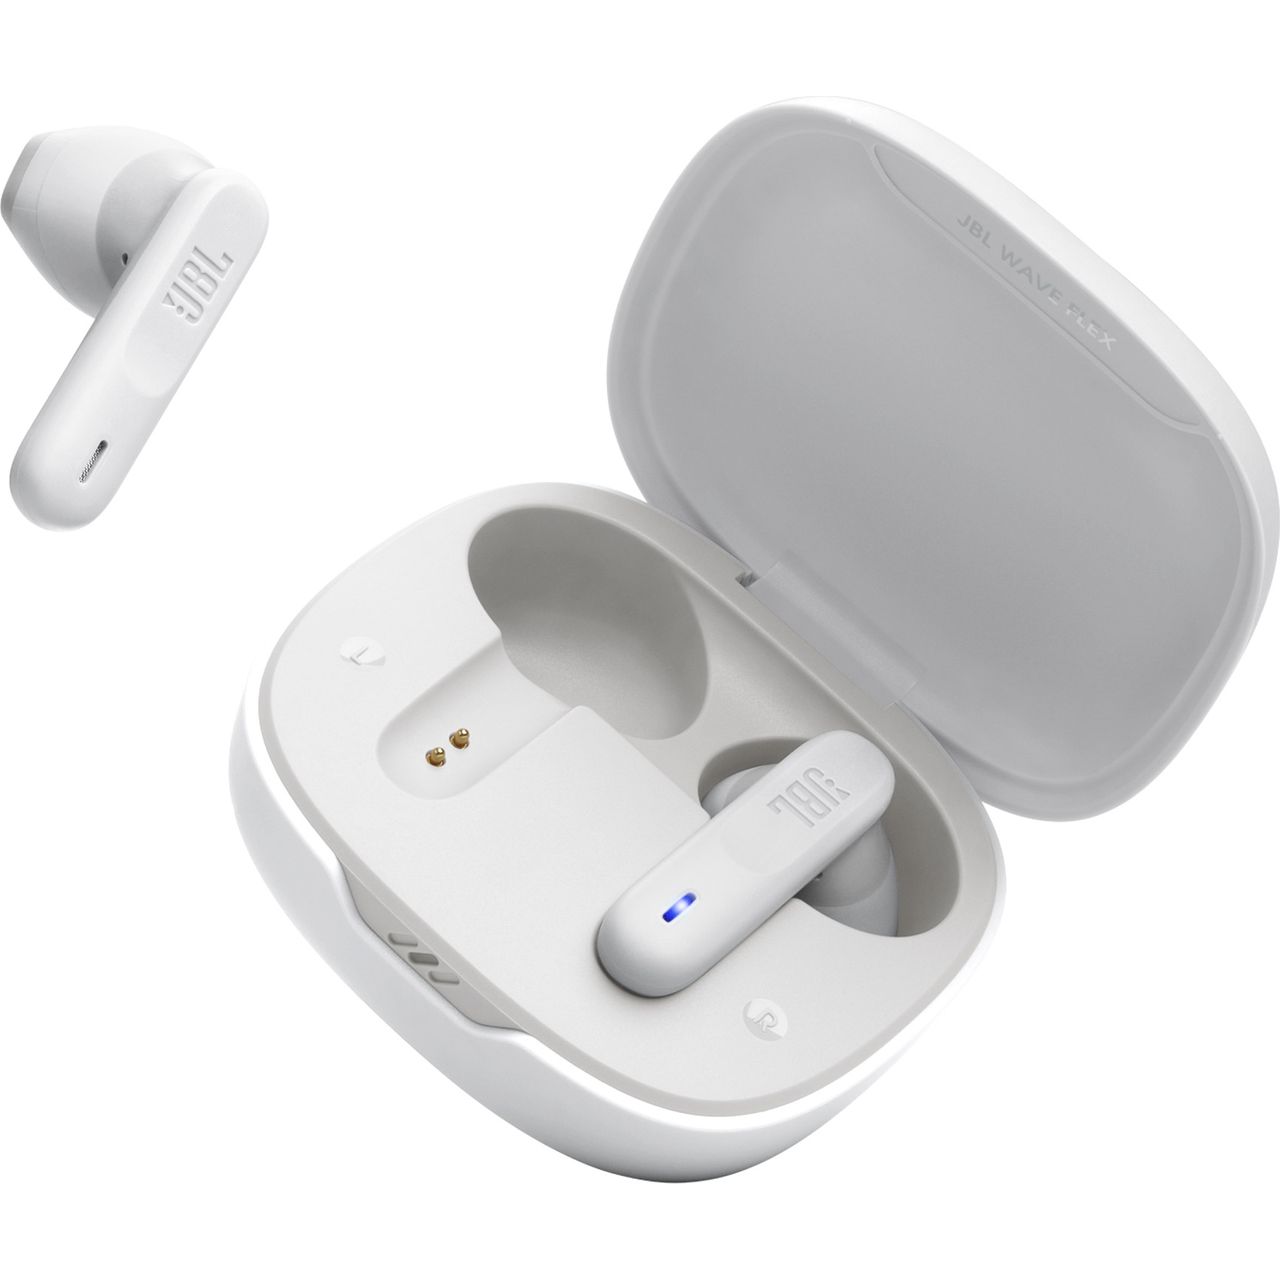 JBL Wave Flex wireless in-ear headphones